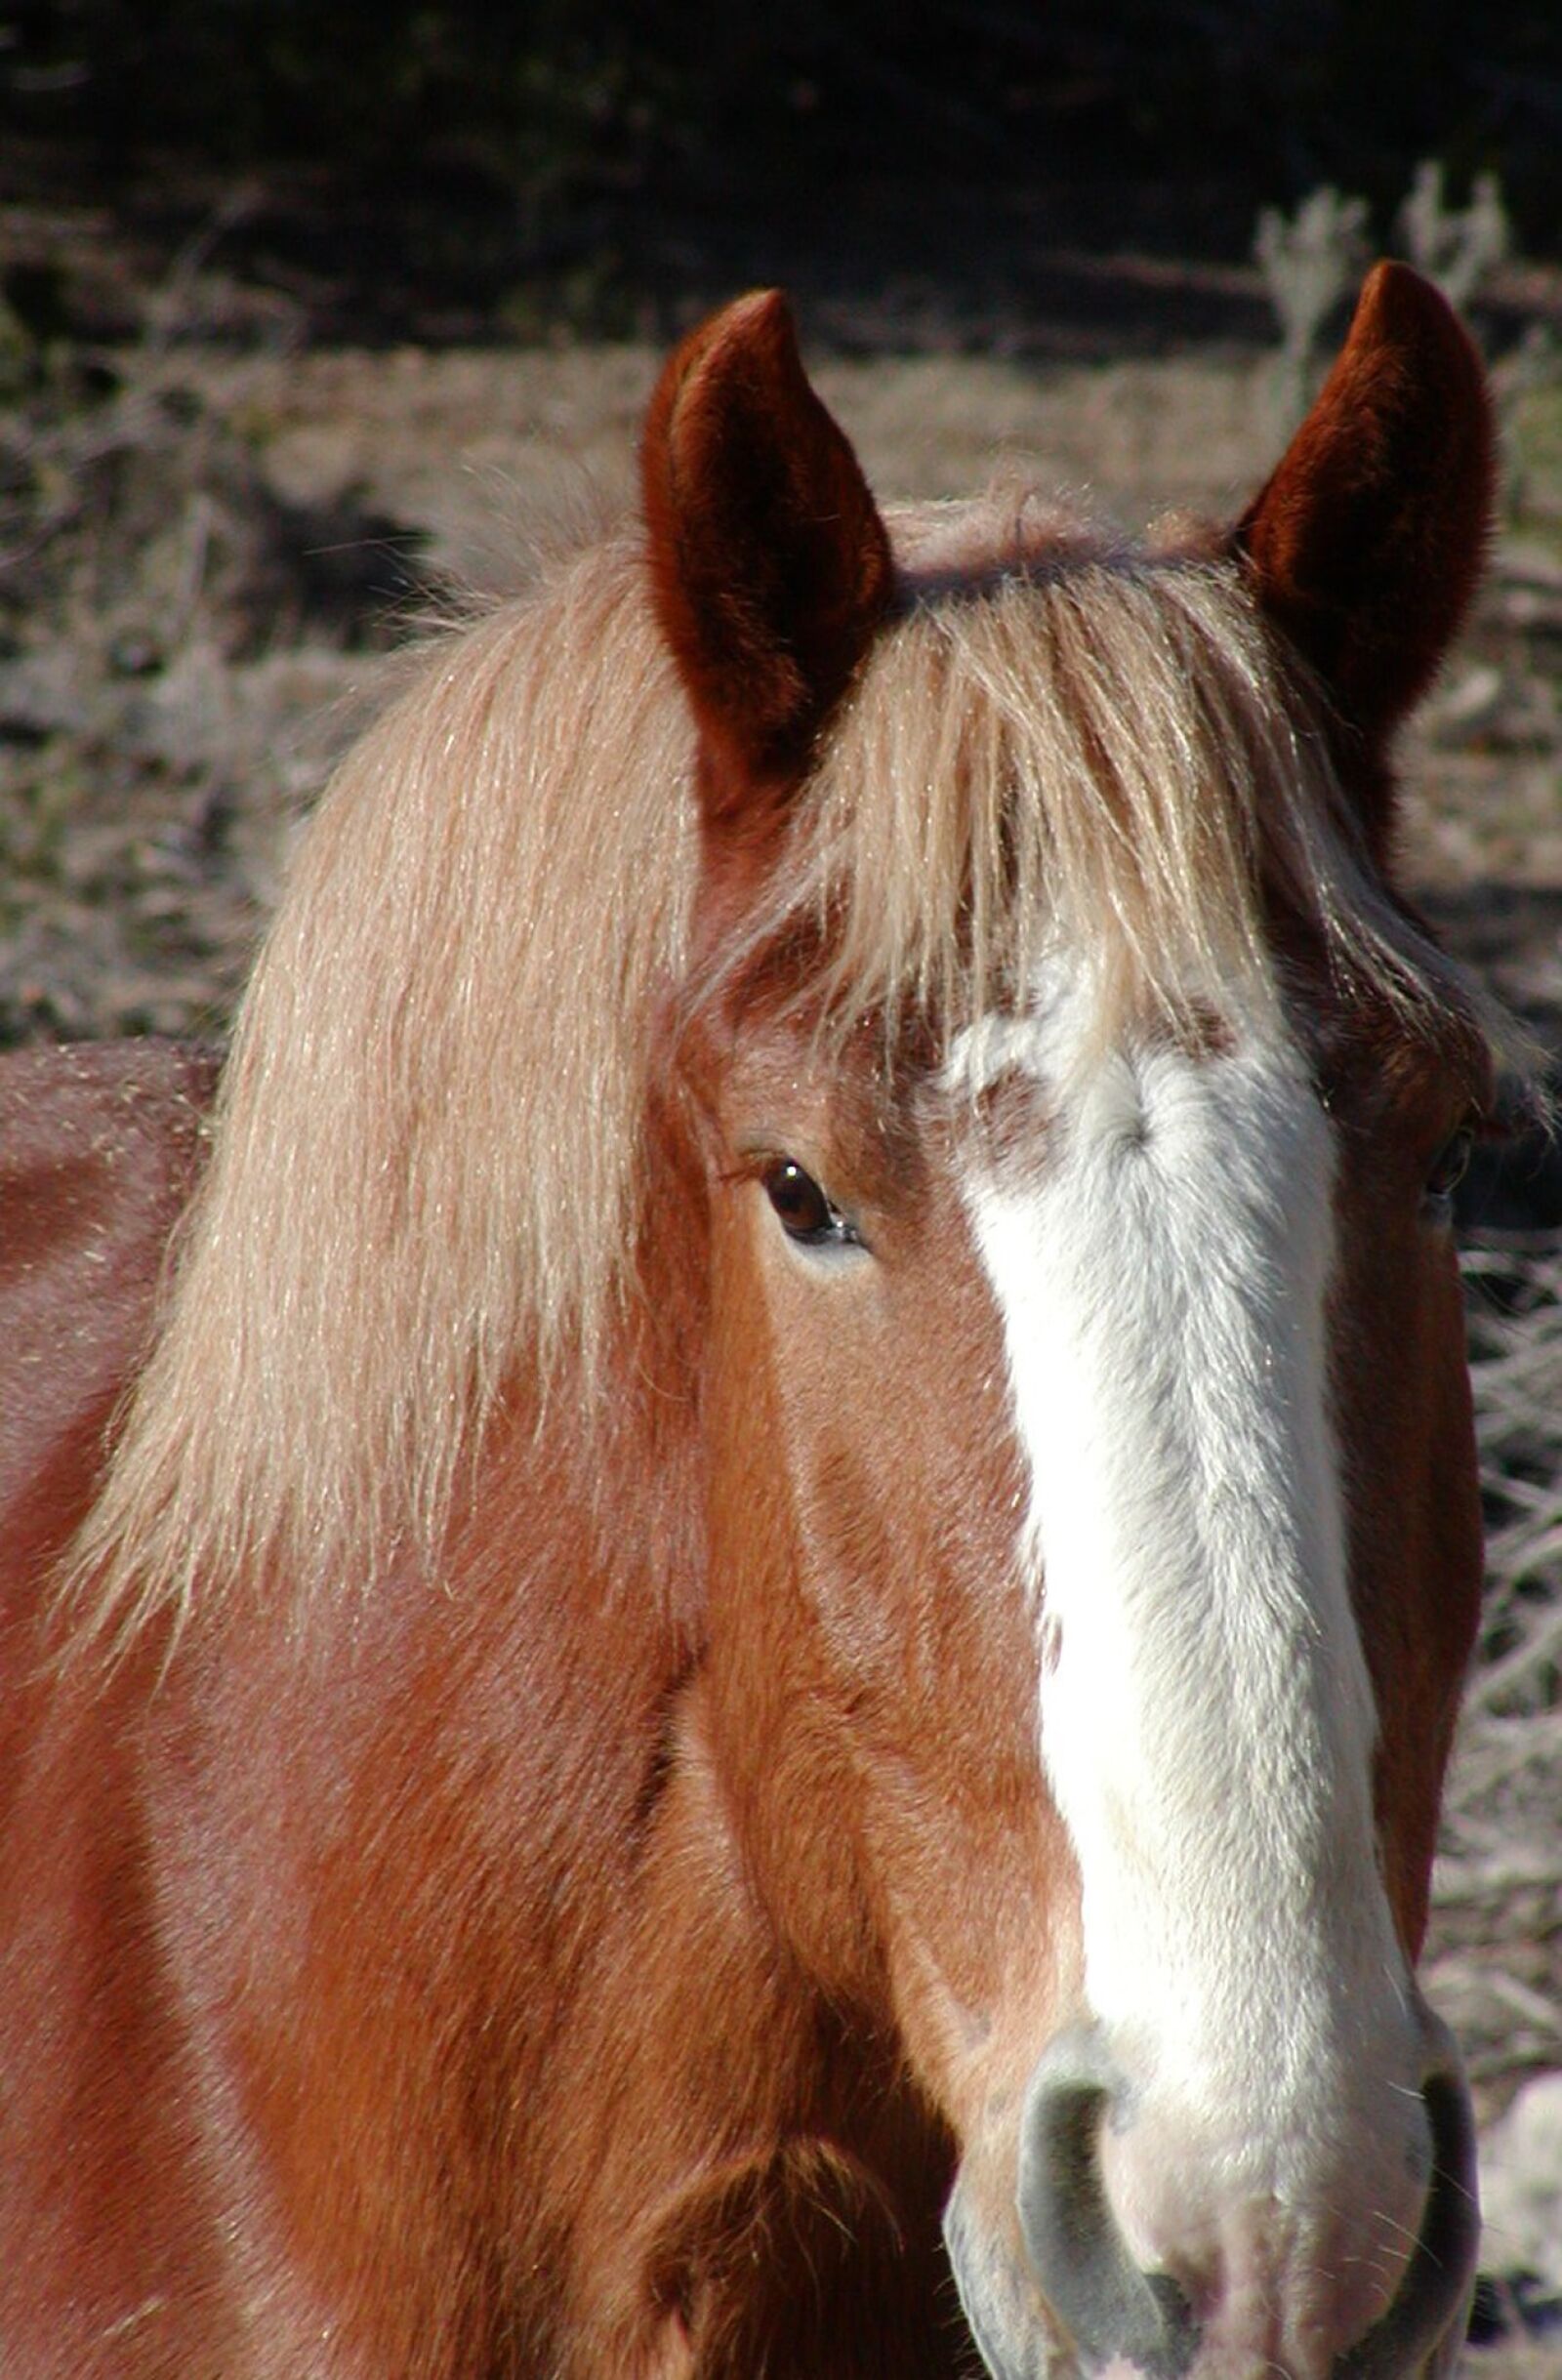 Olympus C700UZ sample photo. Horse, equine, equestrian photography